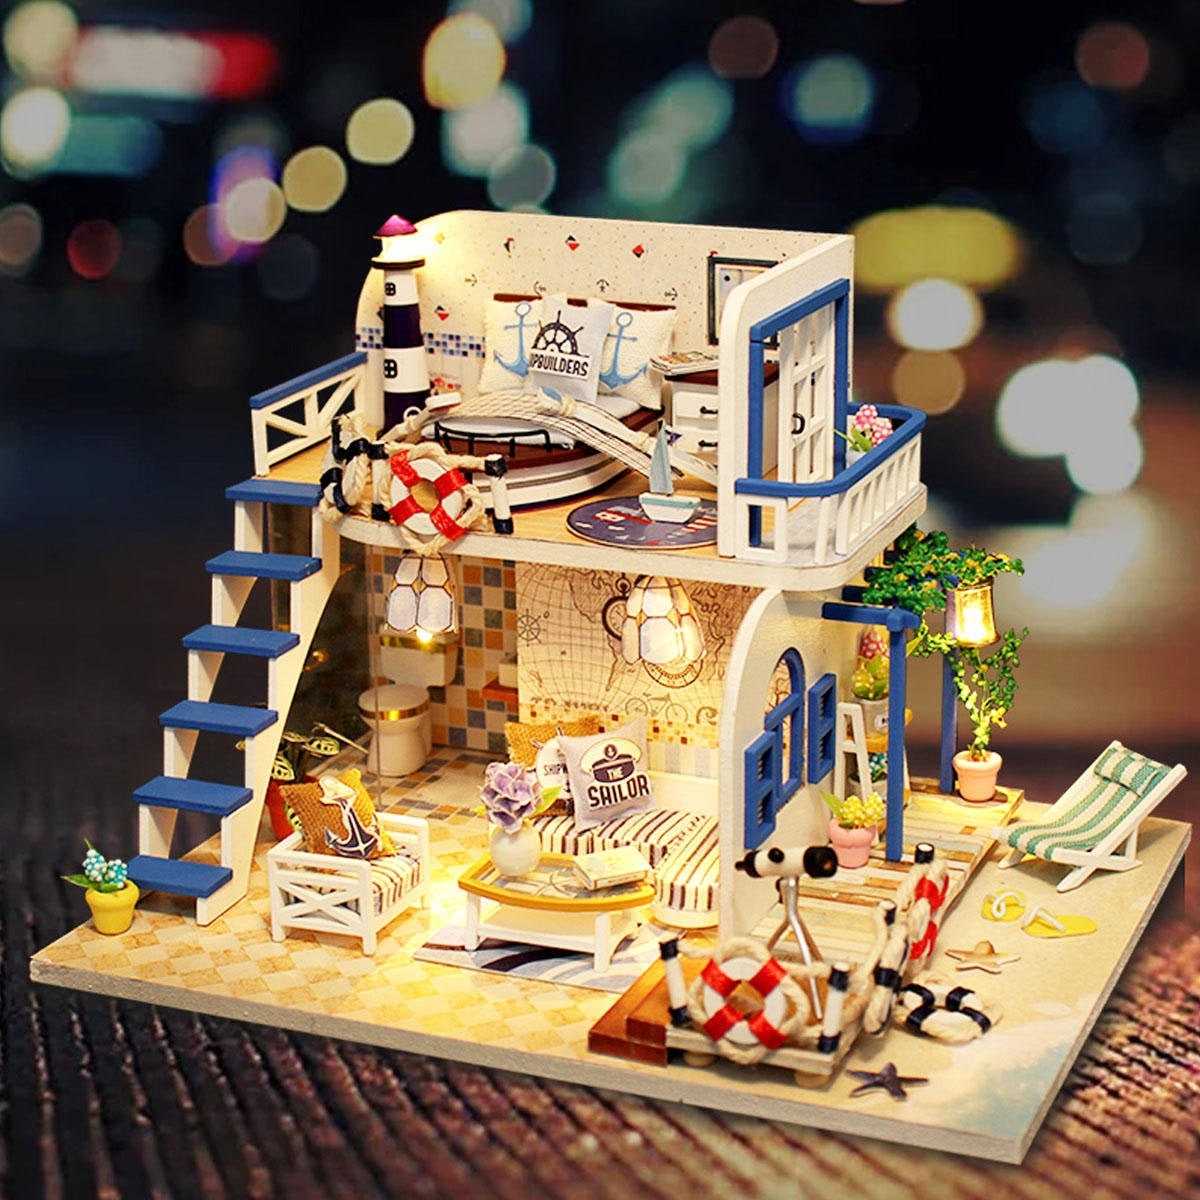 Maison de poupée Miniature, ensemble de plage, Micro paysage d'été